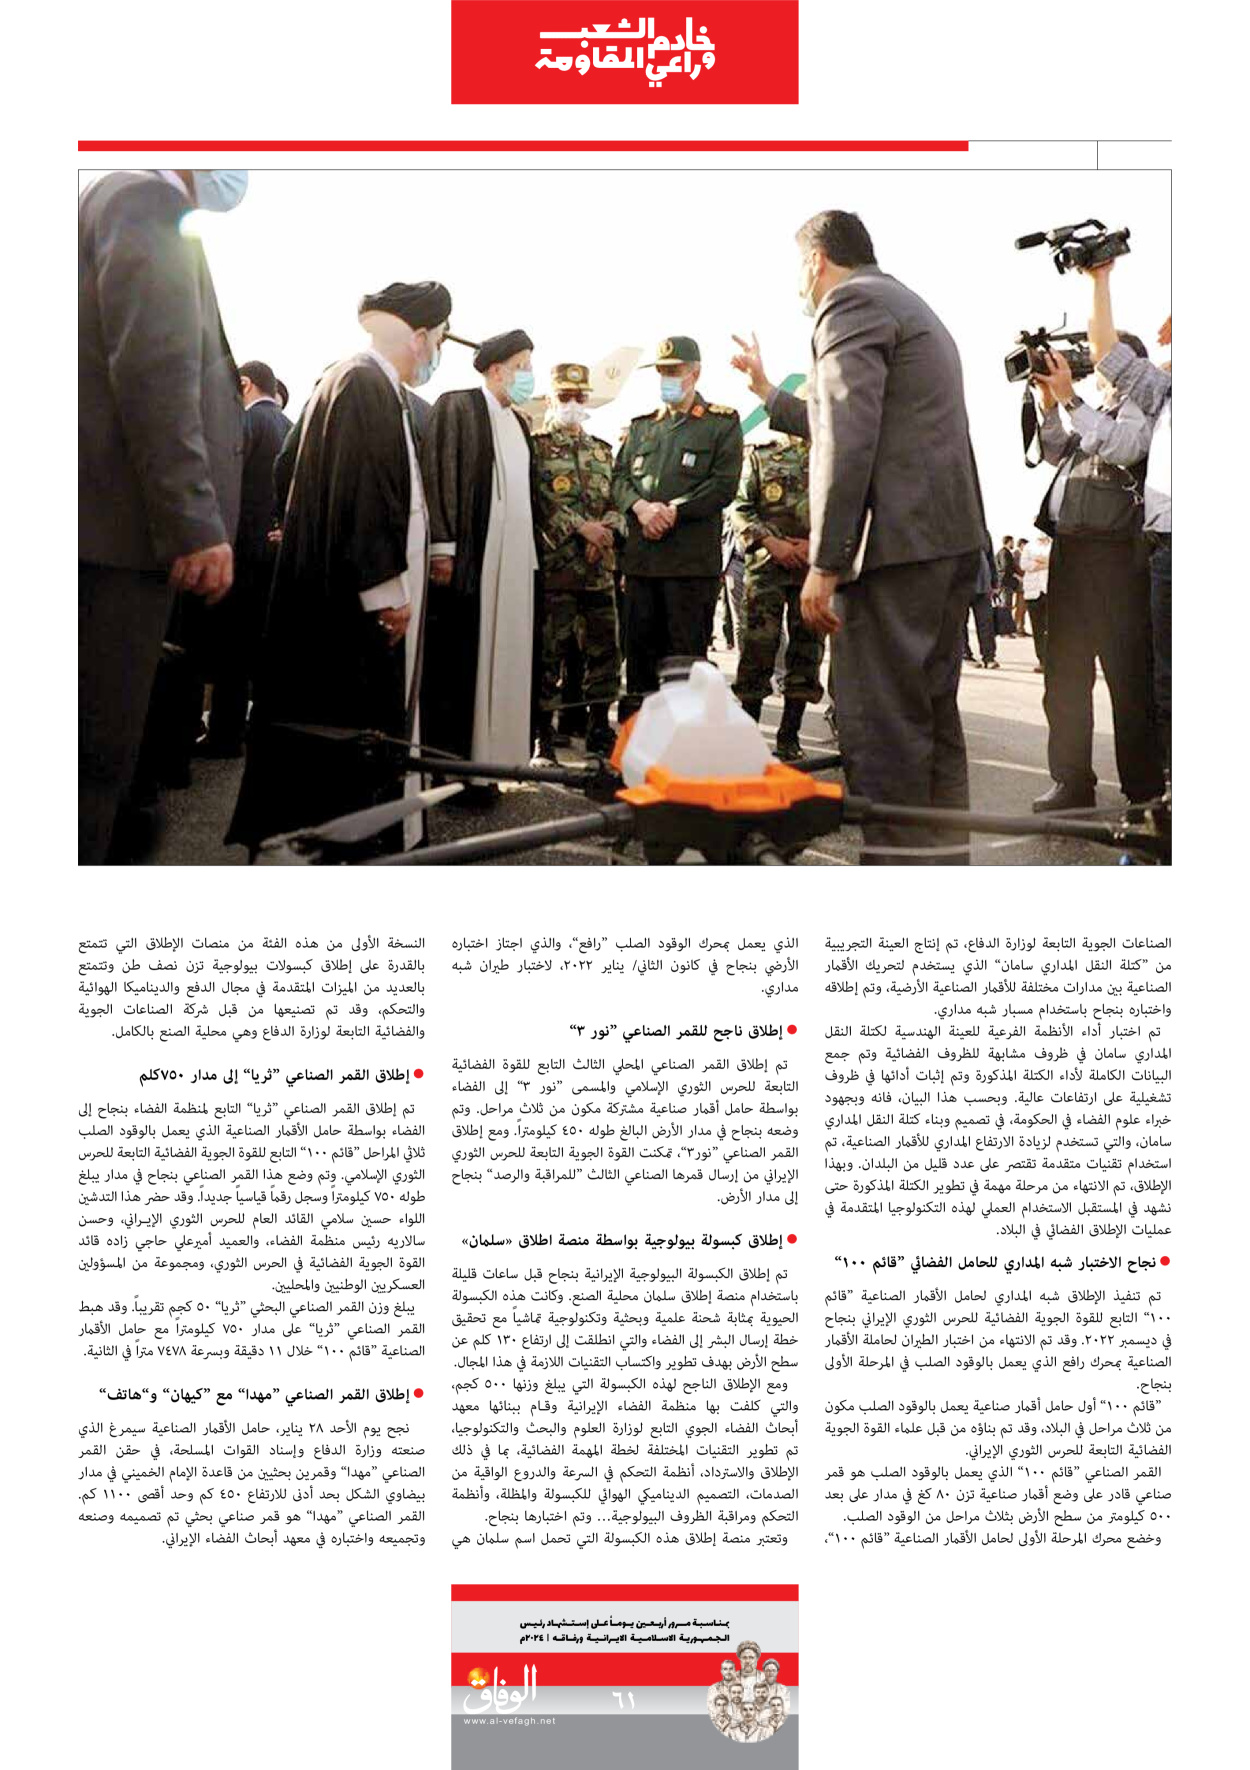 صحیفة ایران الدولیة الوفاق - ملحق ویژه نامه چهلم شهید رییسی - ٢٩ يونيو ٢٠٢٤ - الصفحة ٦۱